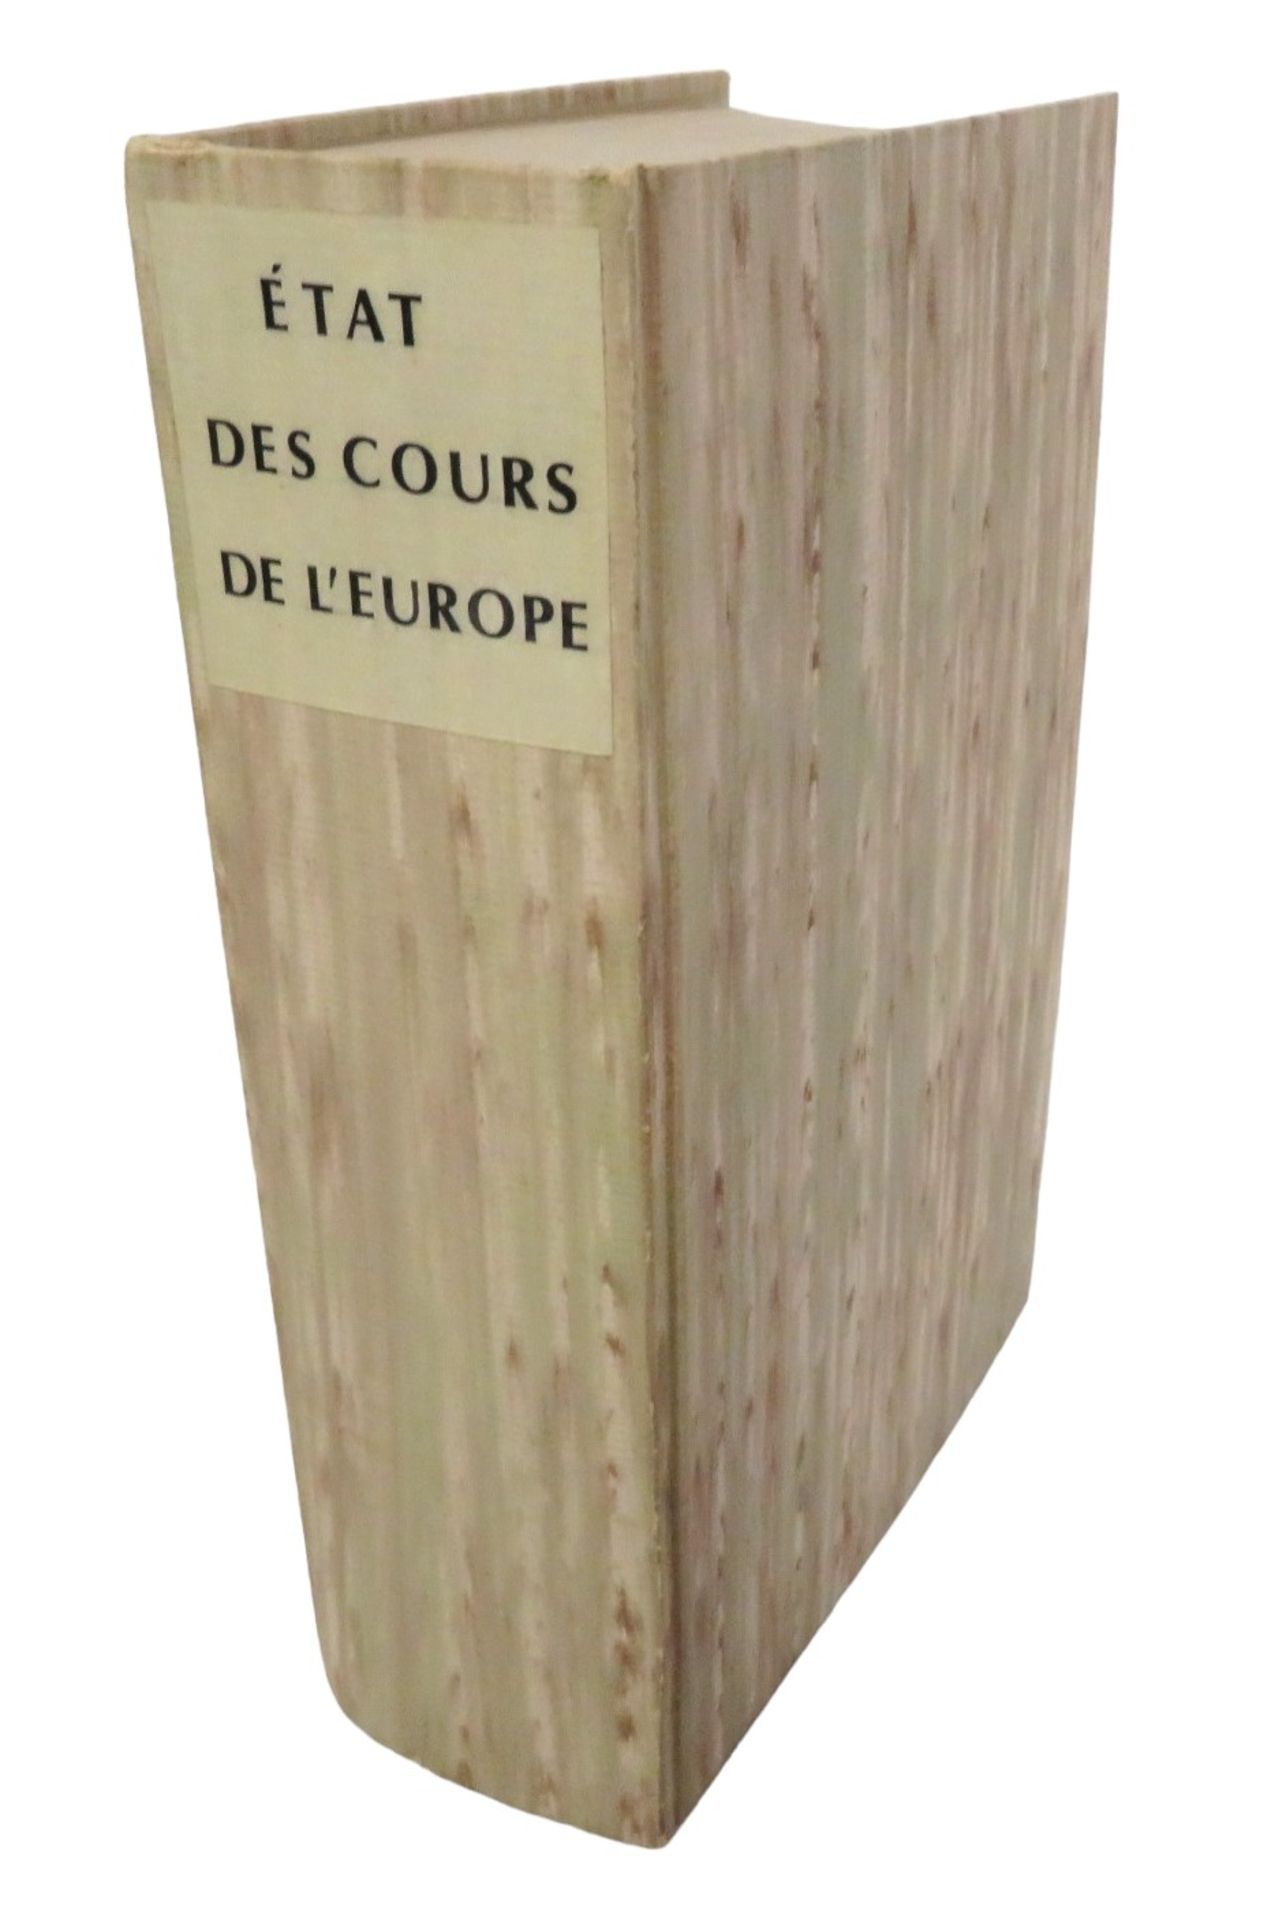 Bd., Roche-Tilhac, L'Abbé de la: Etat des Cours de l'Europe et des Provinces de France. Paris 1784 - Image 3 of 3